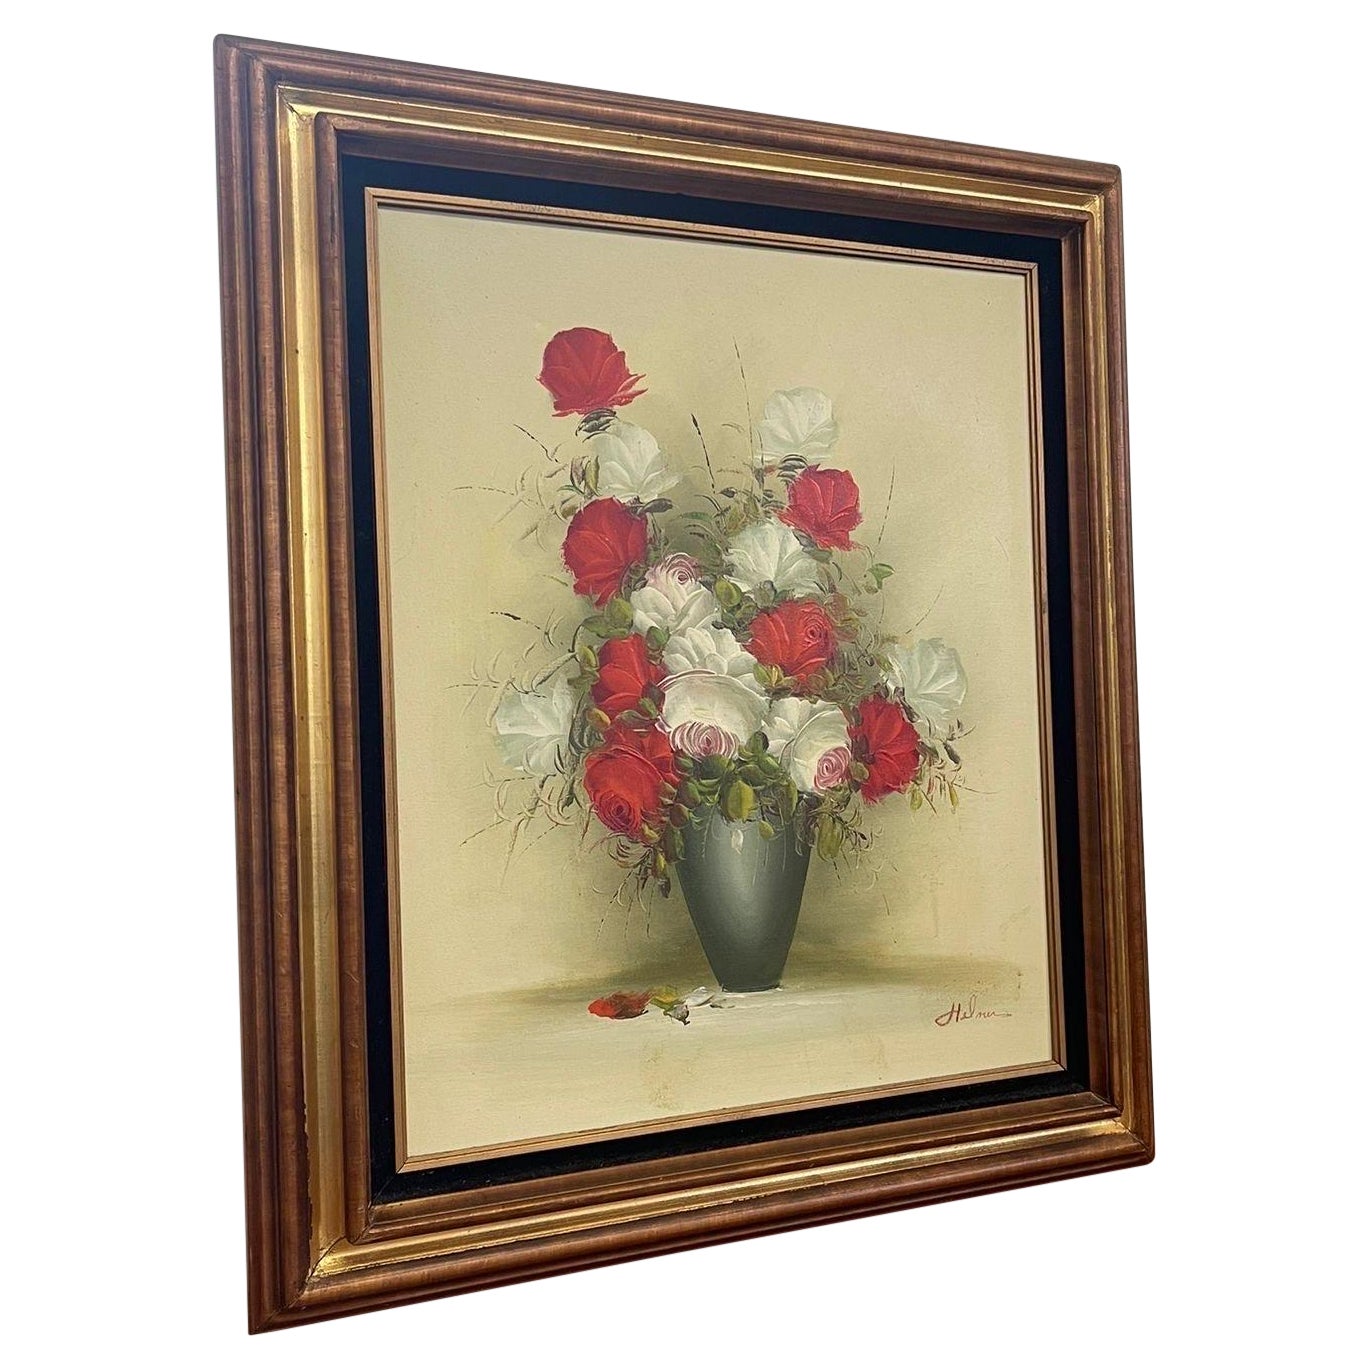 Vintage Signed Original Floral Painting in Wood Frame.